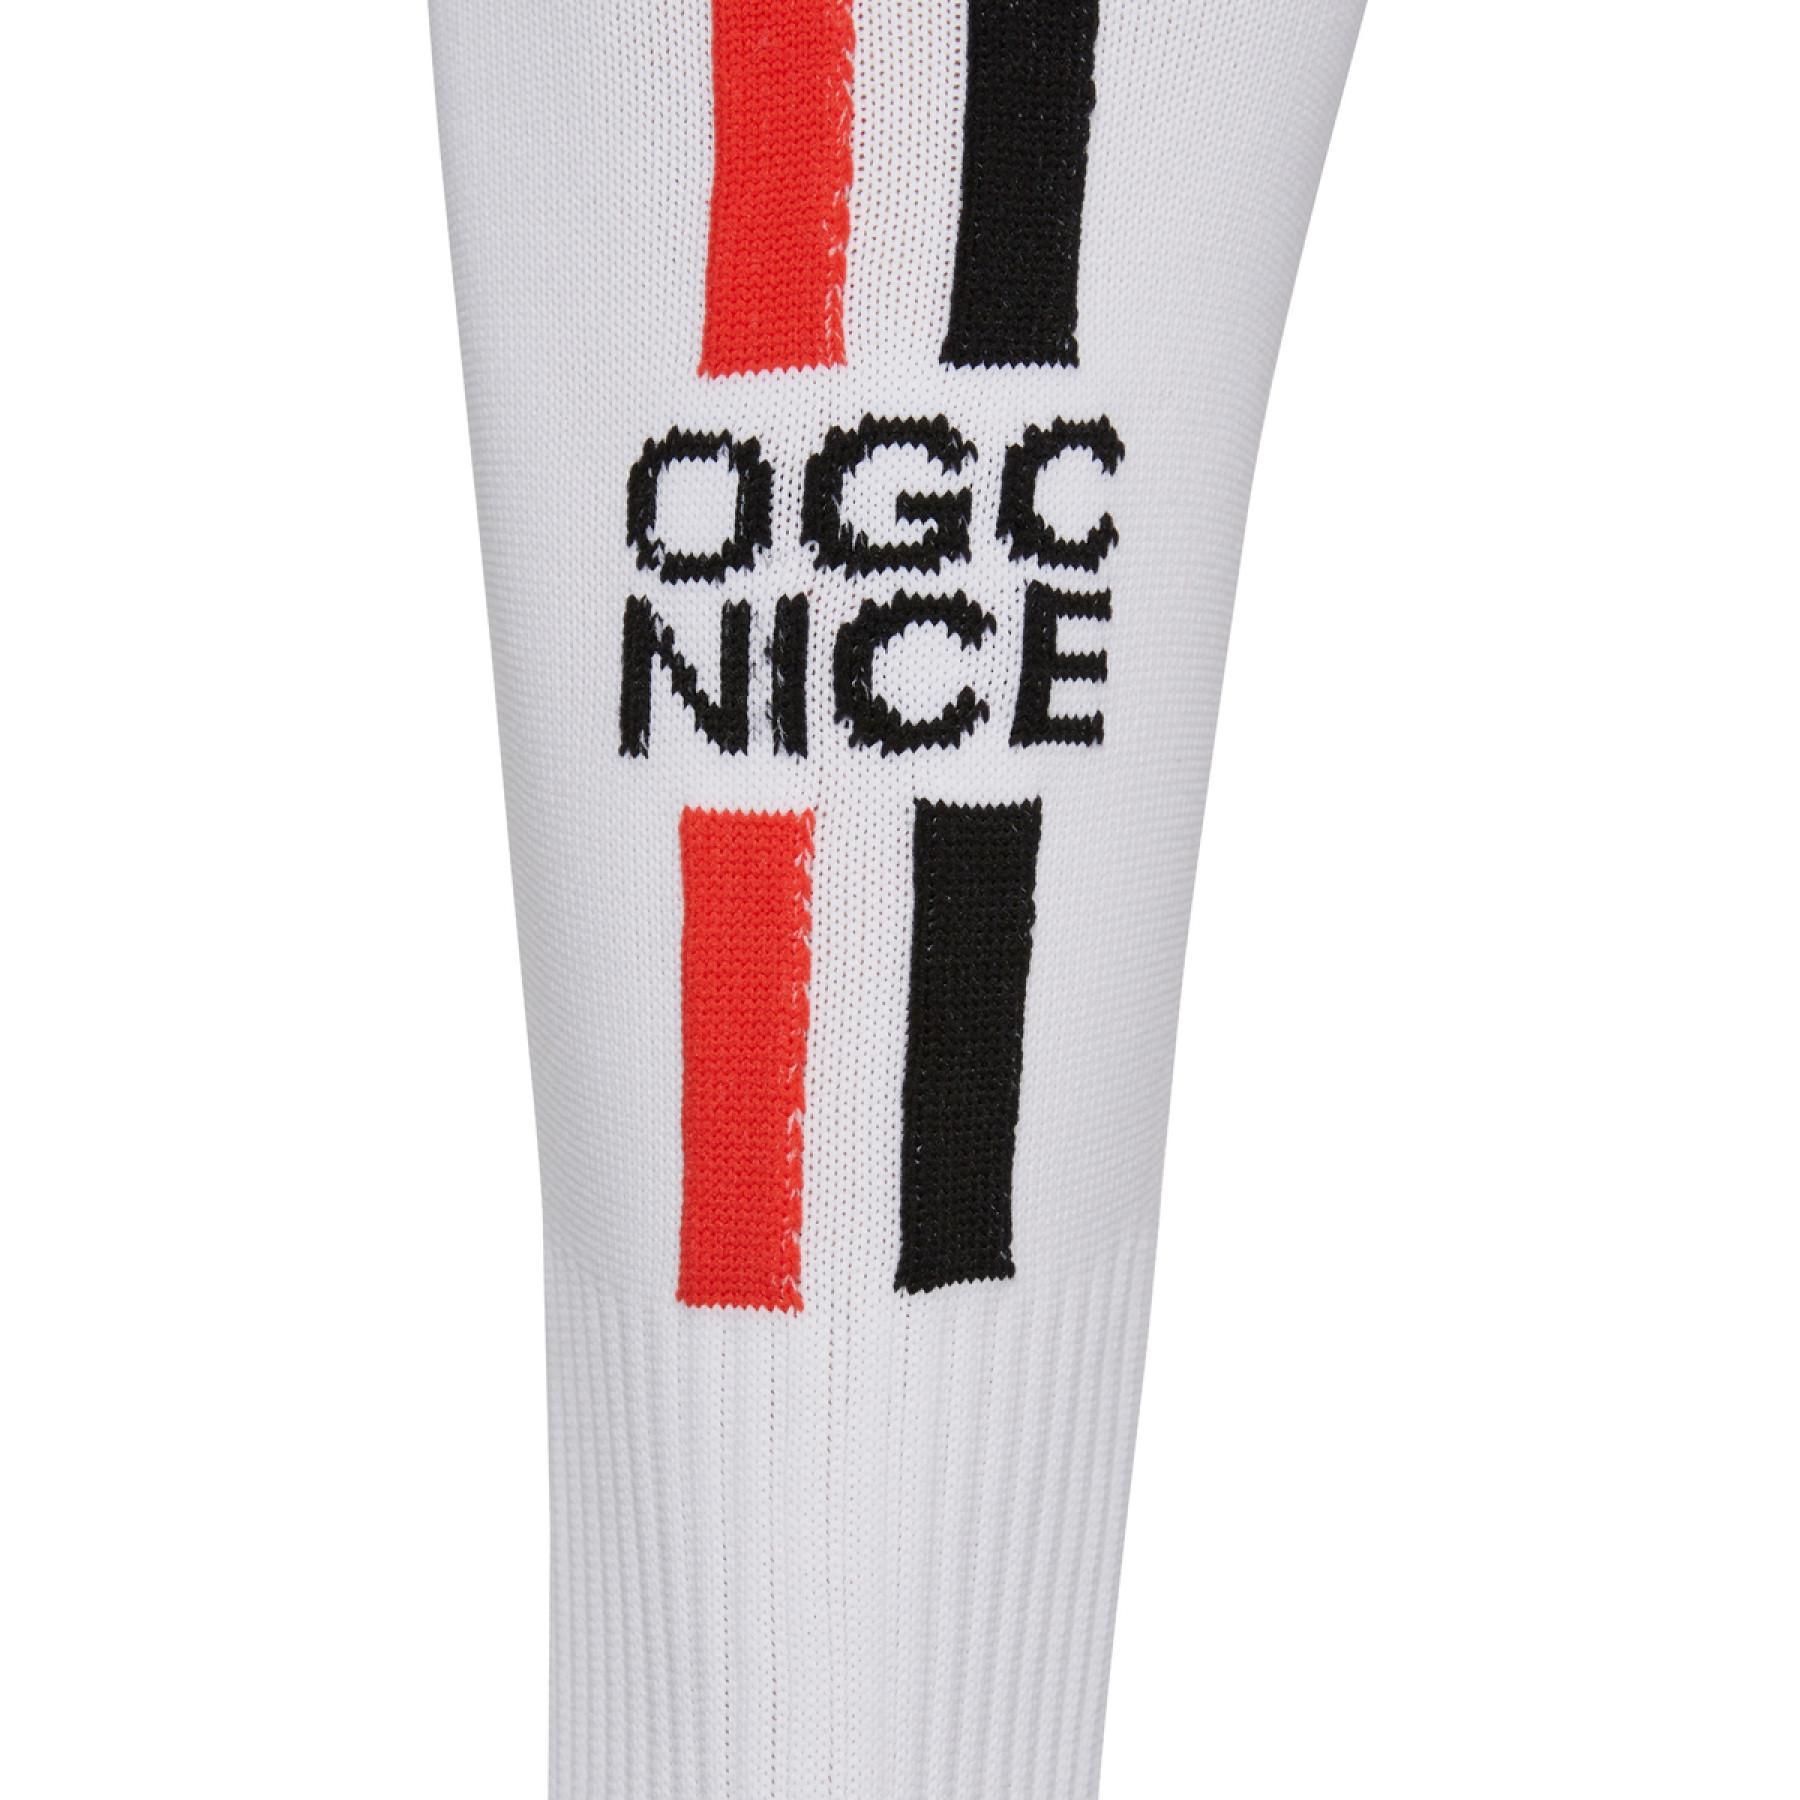 Home sokken OGC Nice 2018/19